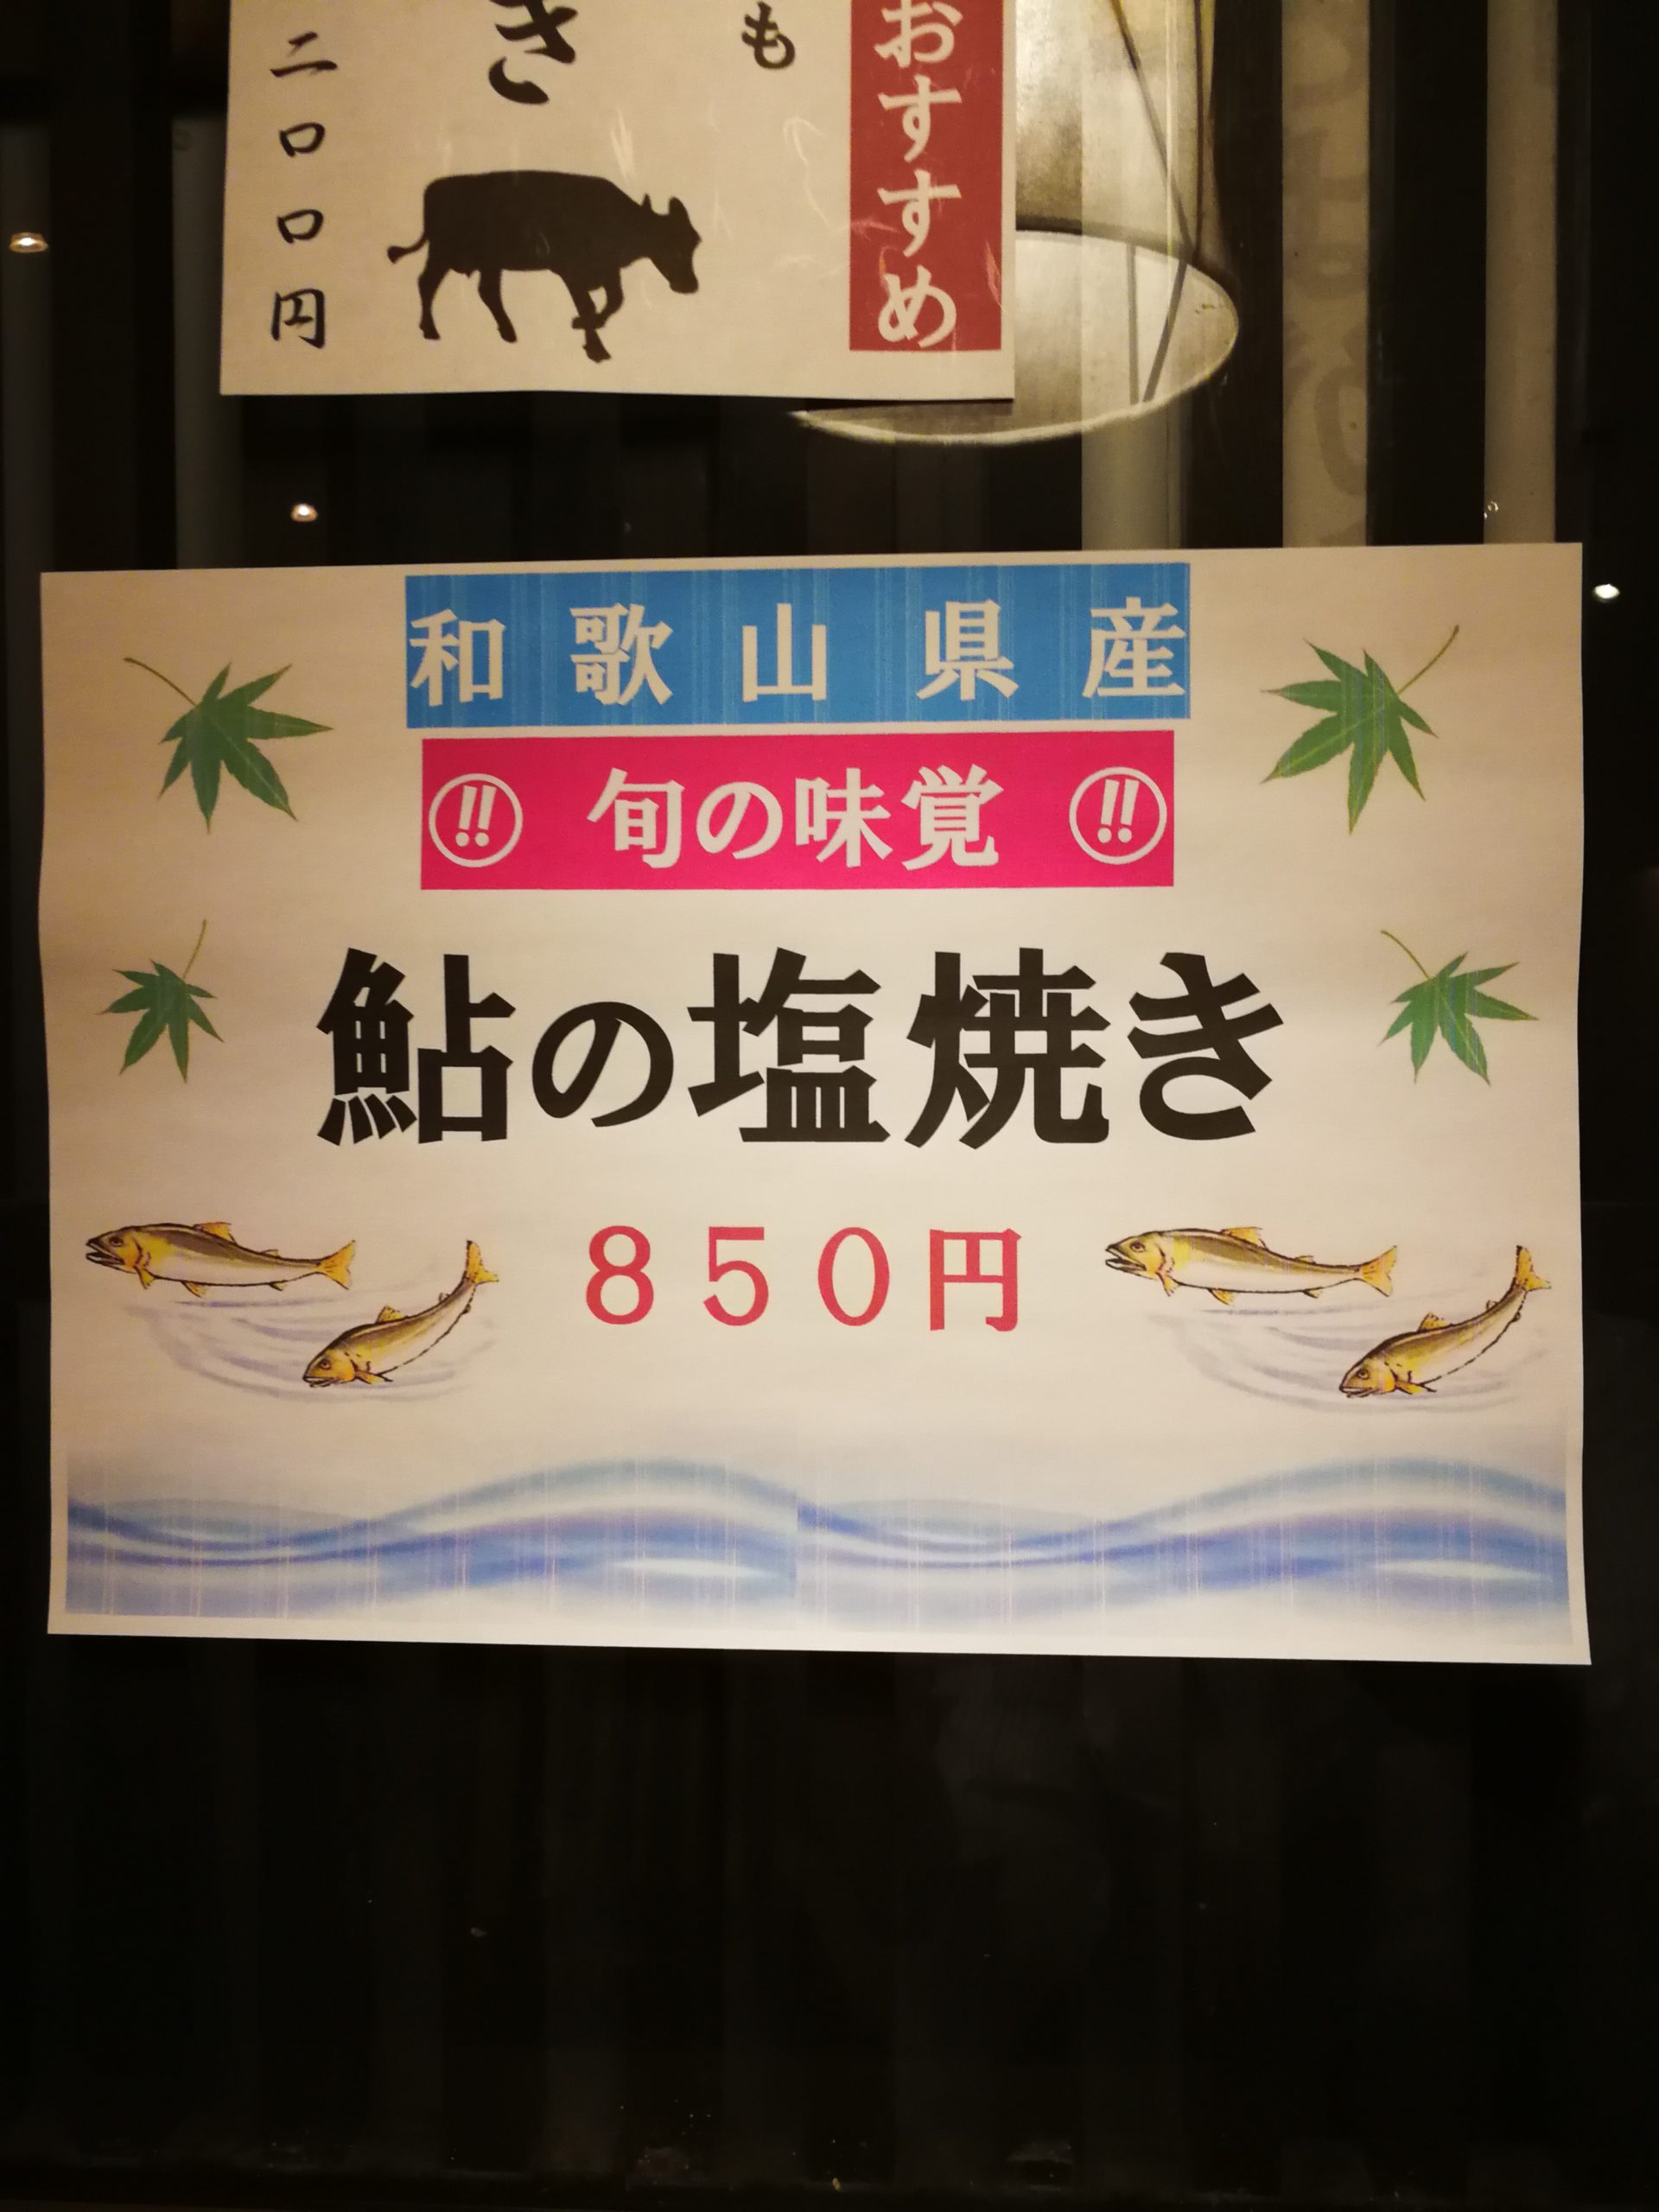 sengawa-soba-ishihara-menu-51